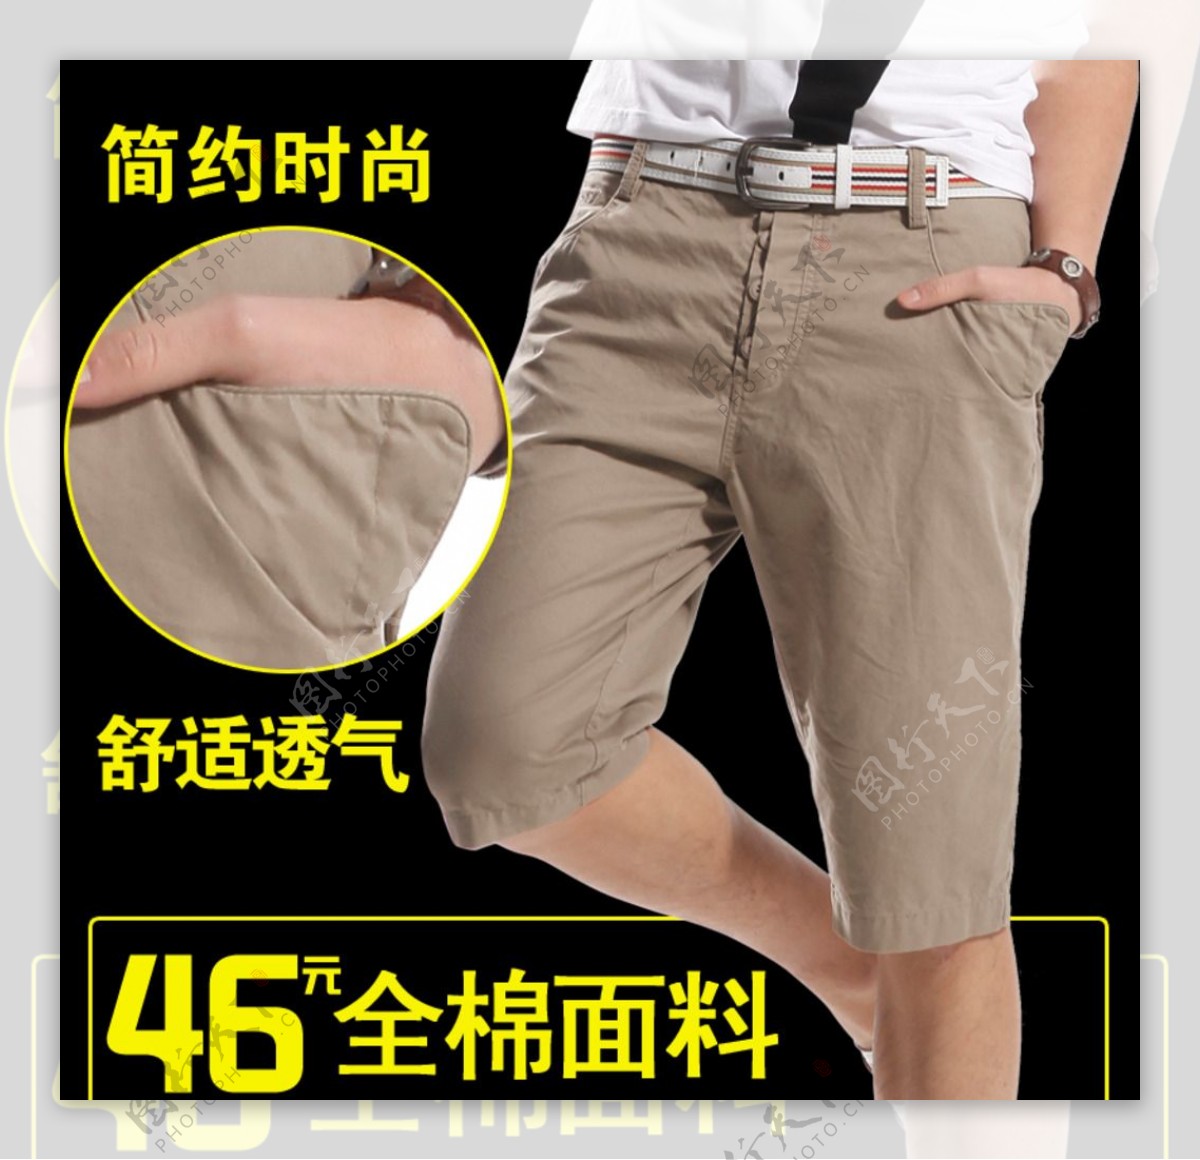 男士短裤促销折扣素材